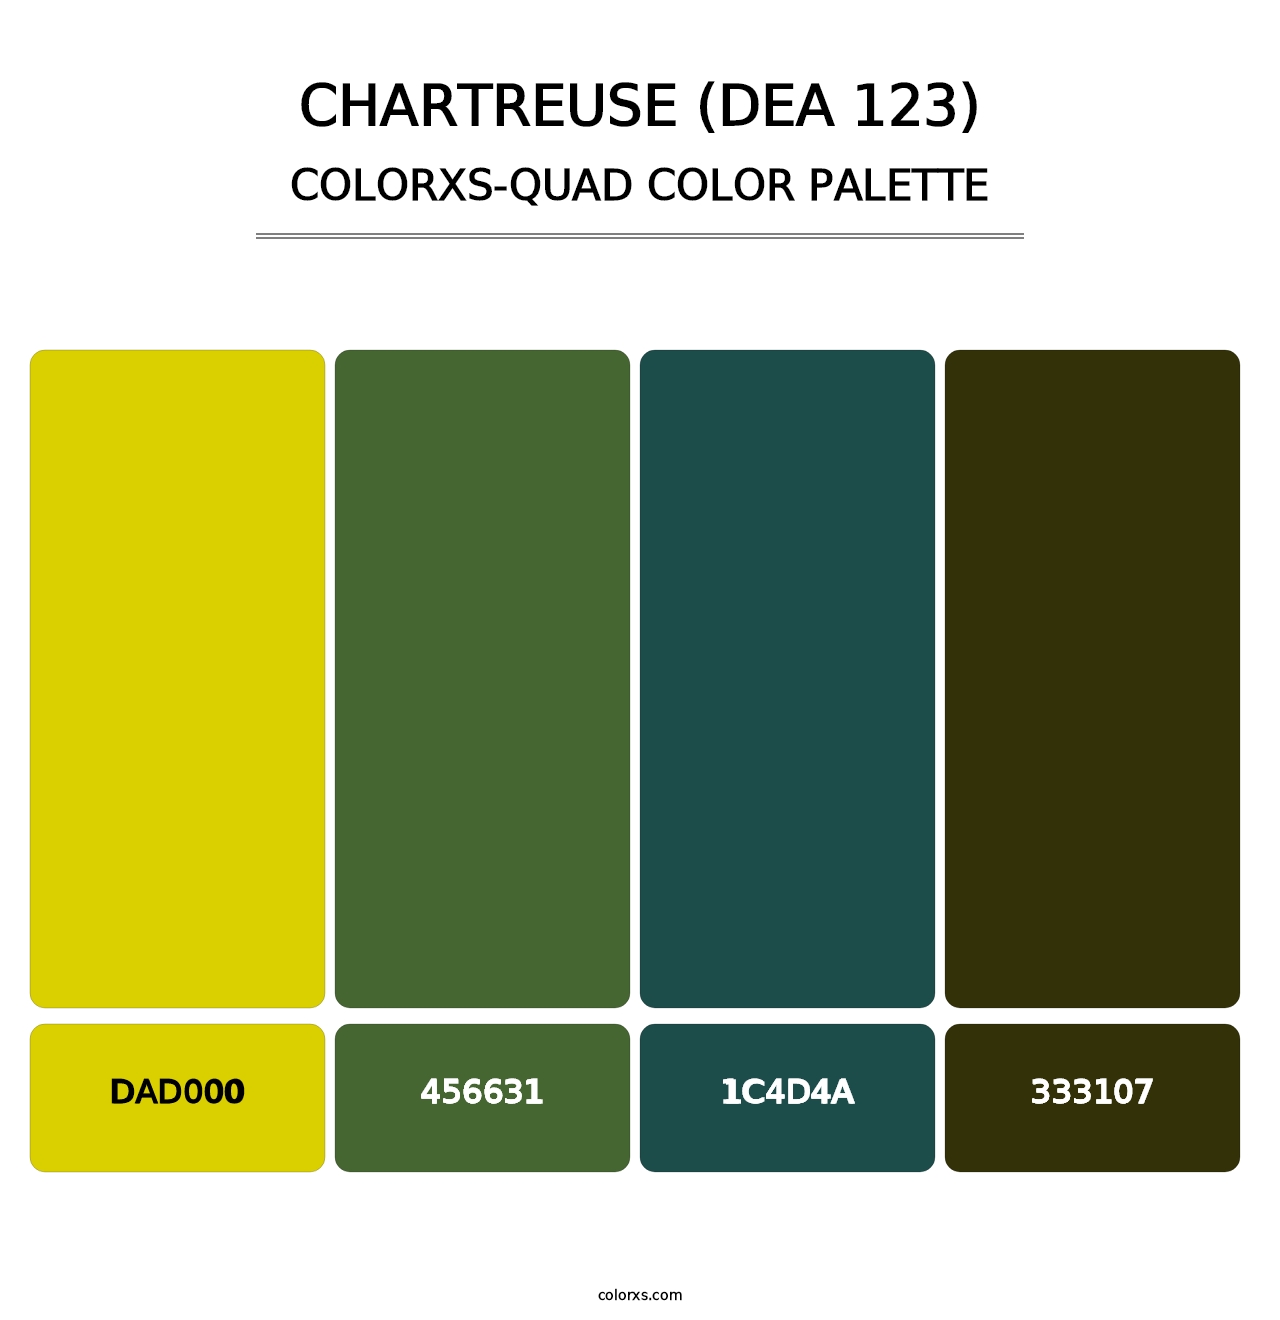 Chartreuse (DEA 123) - Colorxs Quad Palette